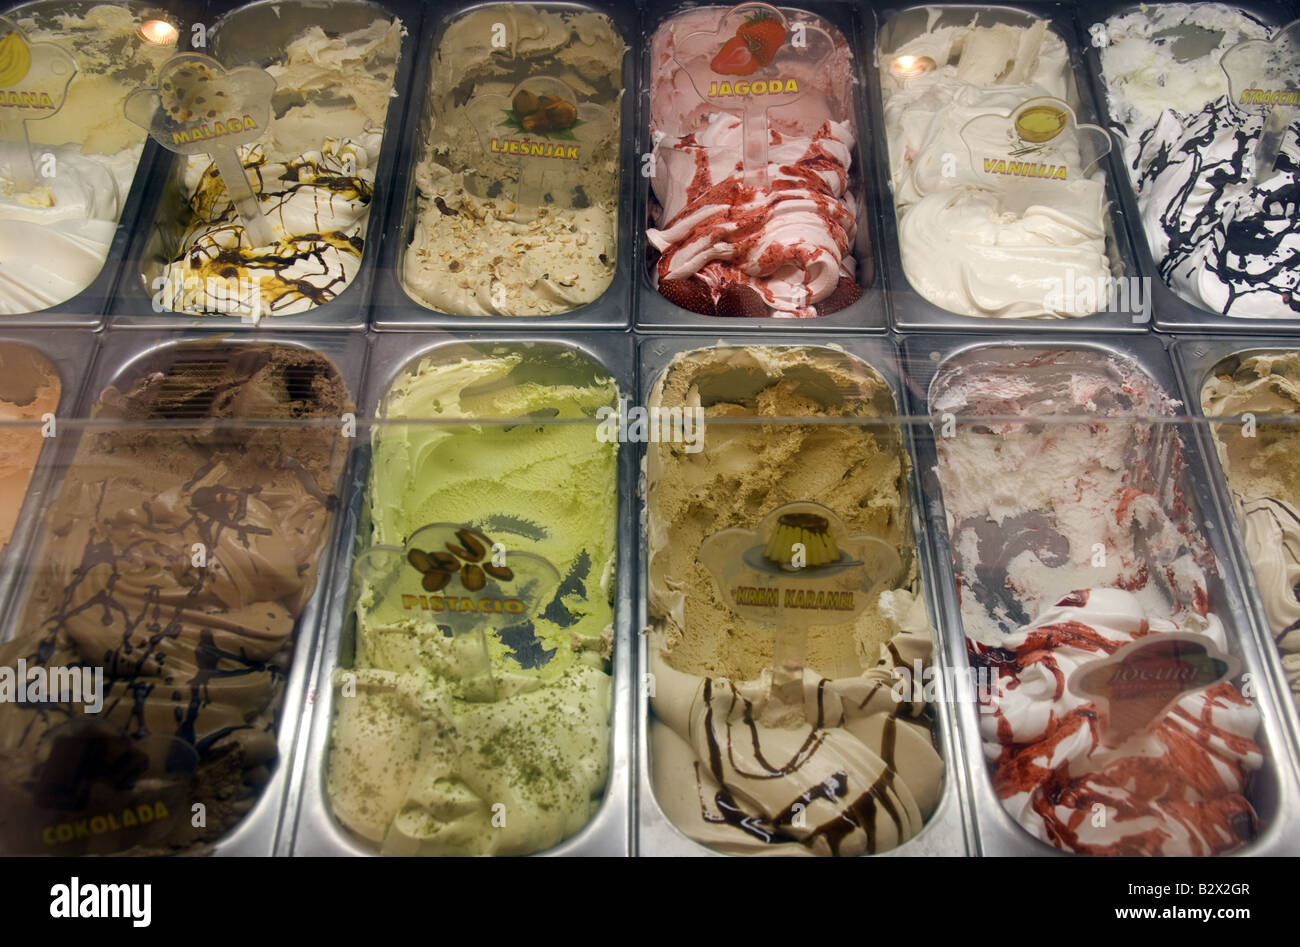 Croatian ice cream freezer display case Stock Photo